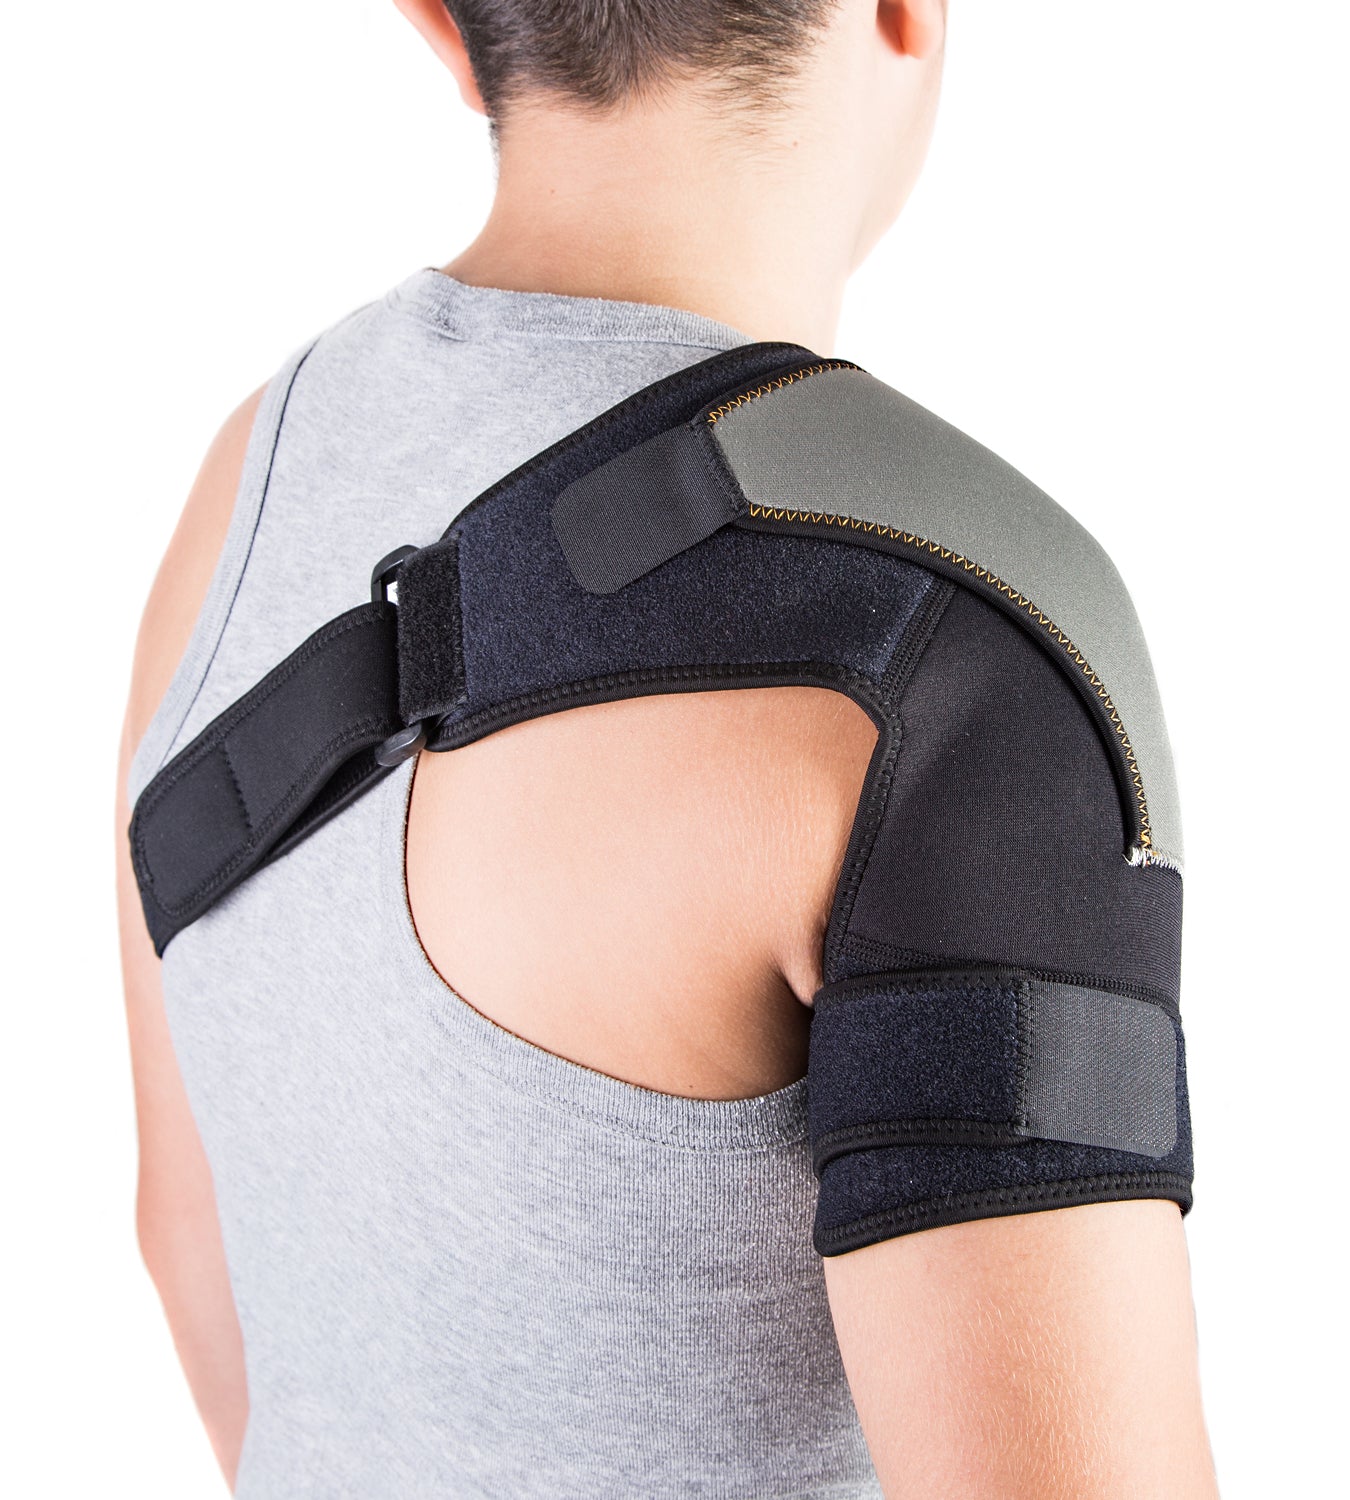 Pro Series Shoulder Support Brace with Shoulder Strap